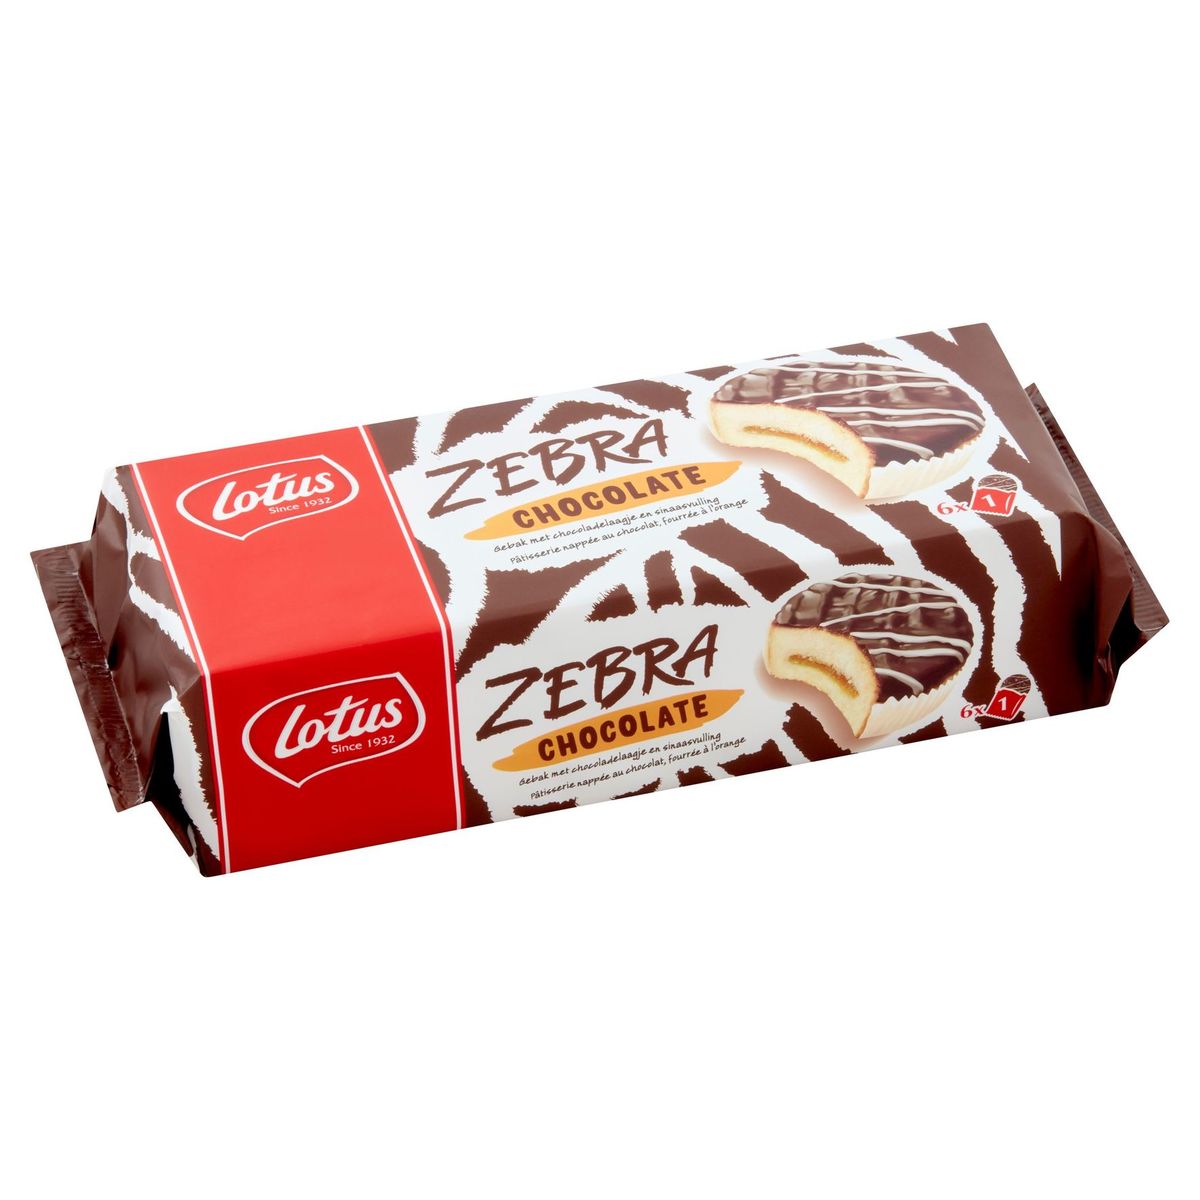 Lotus Zebra Chocolate Gebak Chocoladelaagje en Sinaasvulling 6 x 38.5g